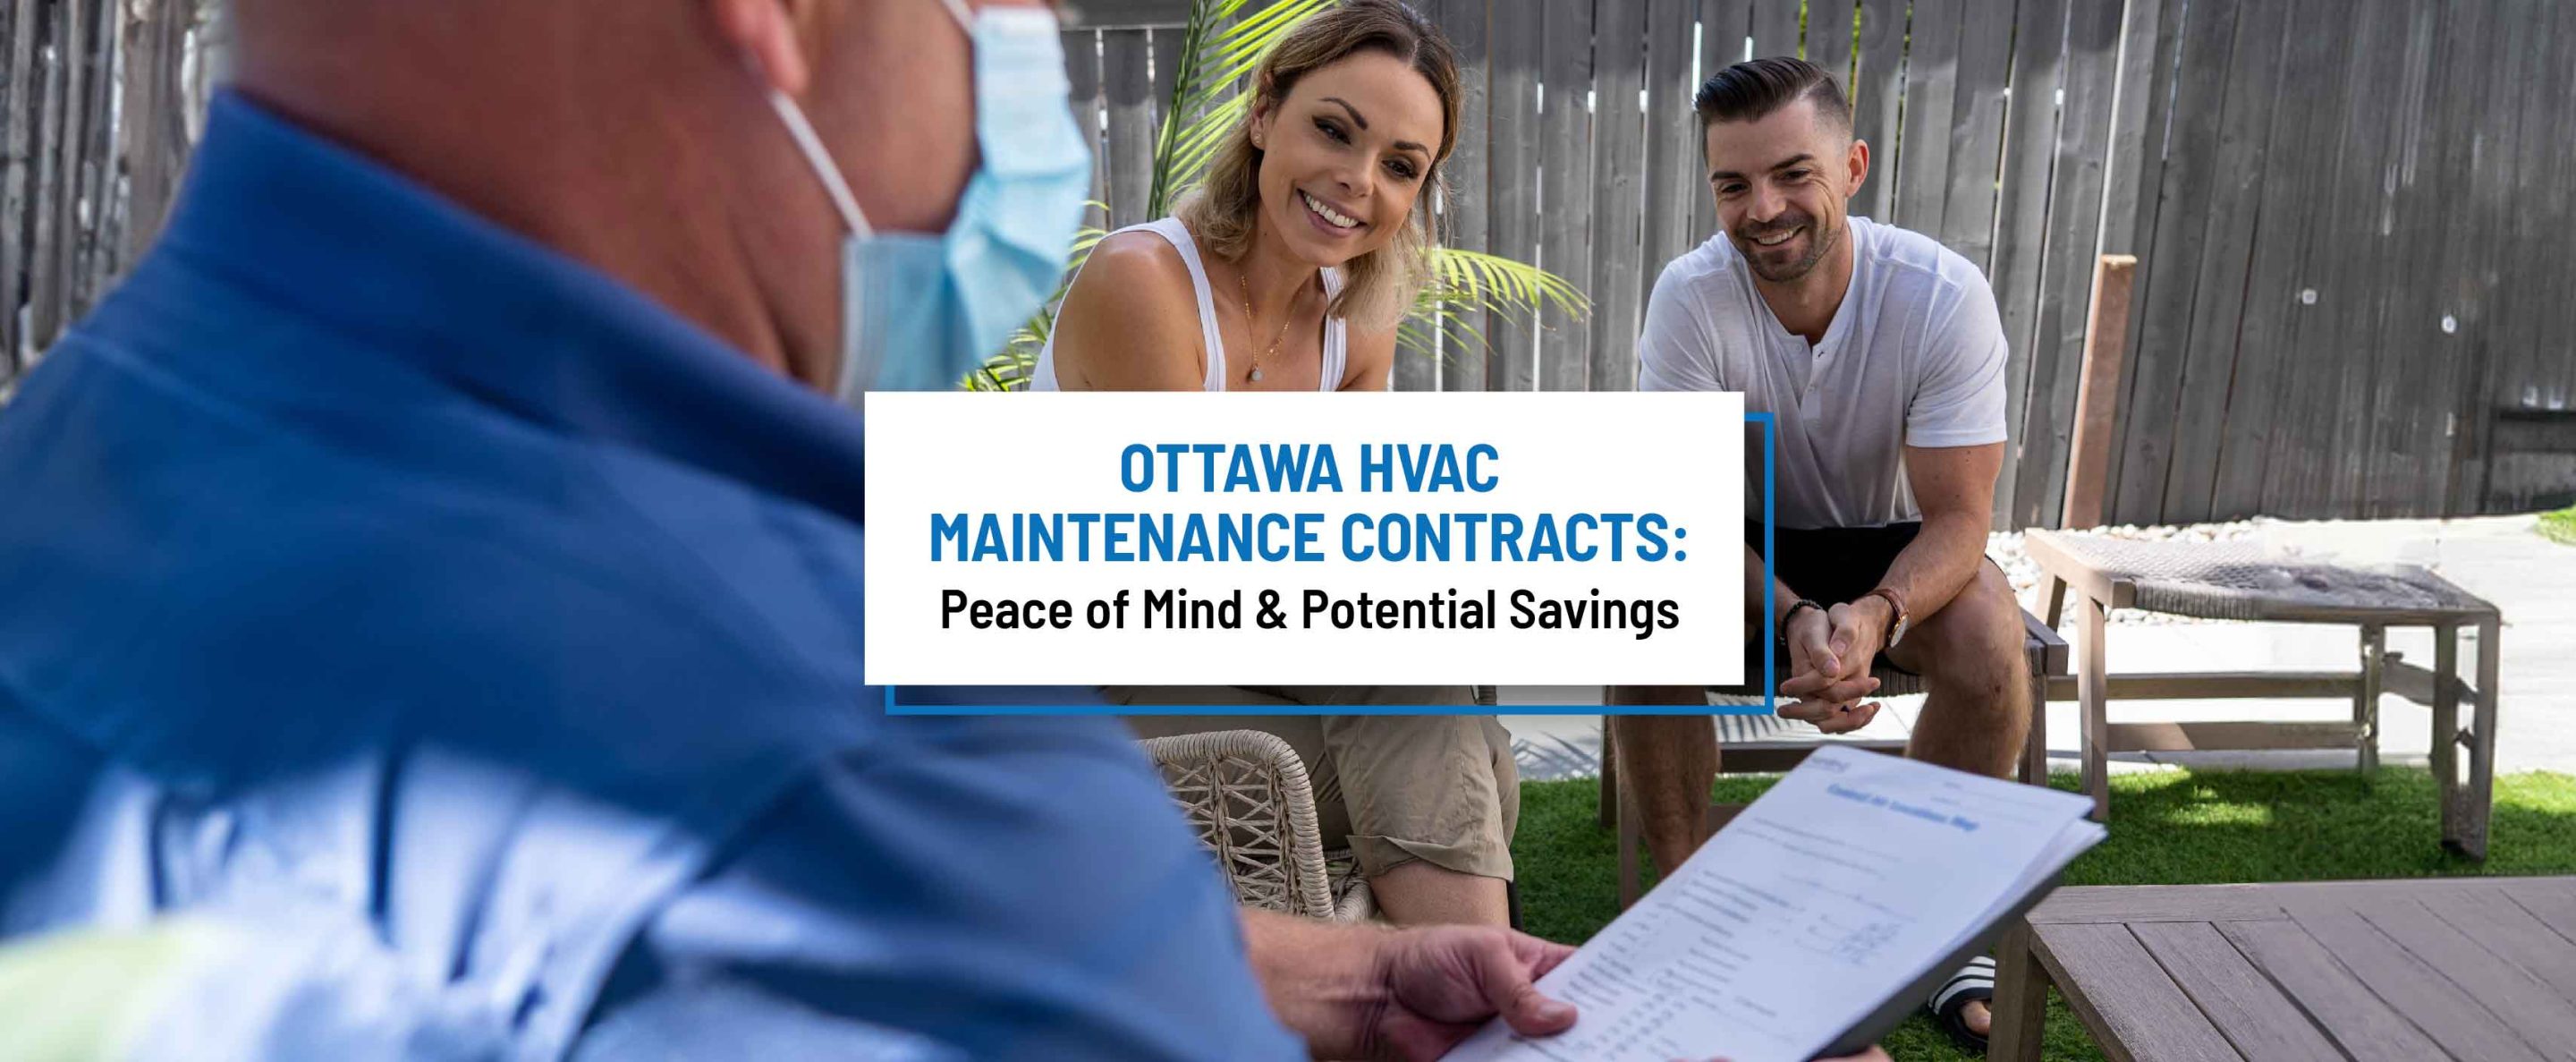 ottawa hvac maintenance contracts